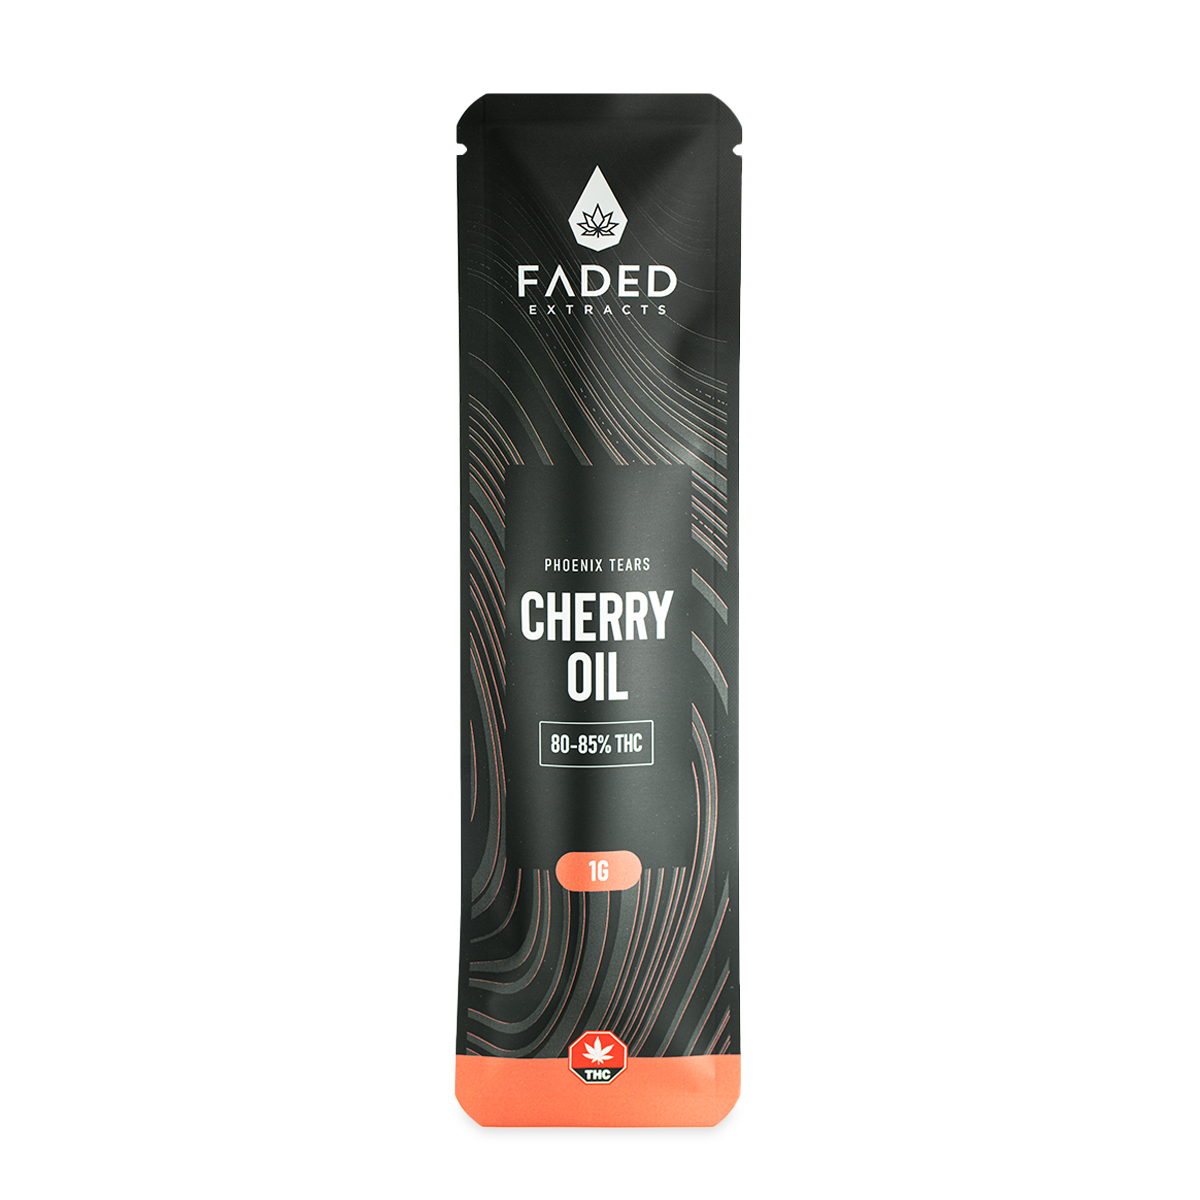 PHOENIX TEARS – Cherry Oil – 1ml or 3ml – Faded